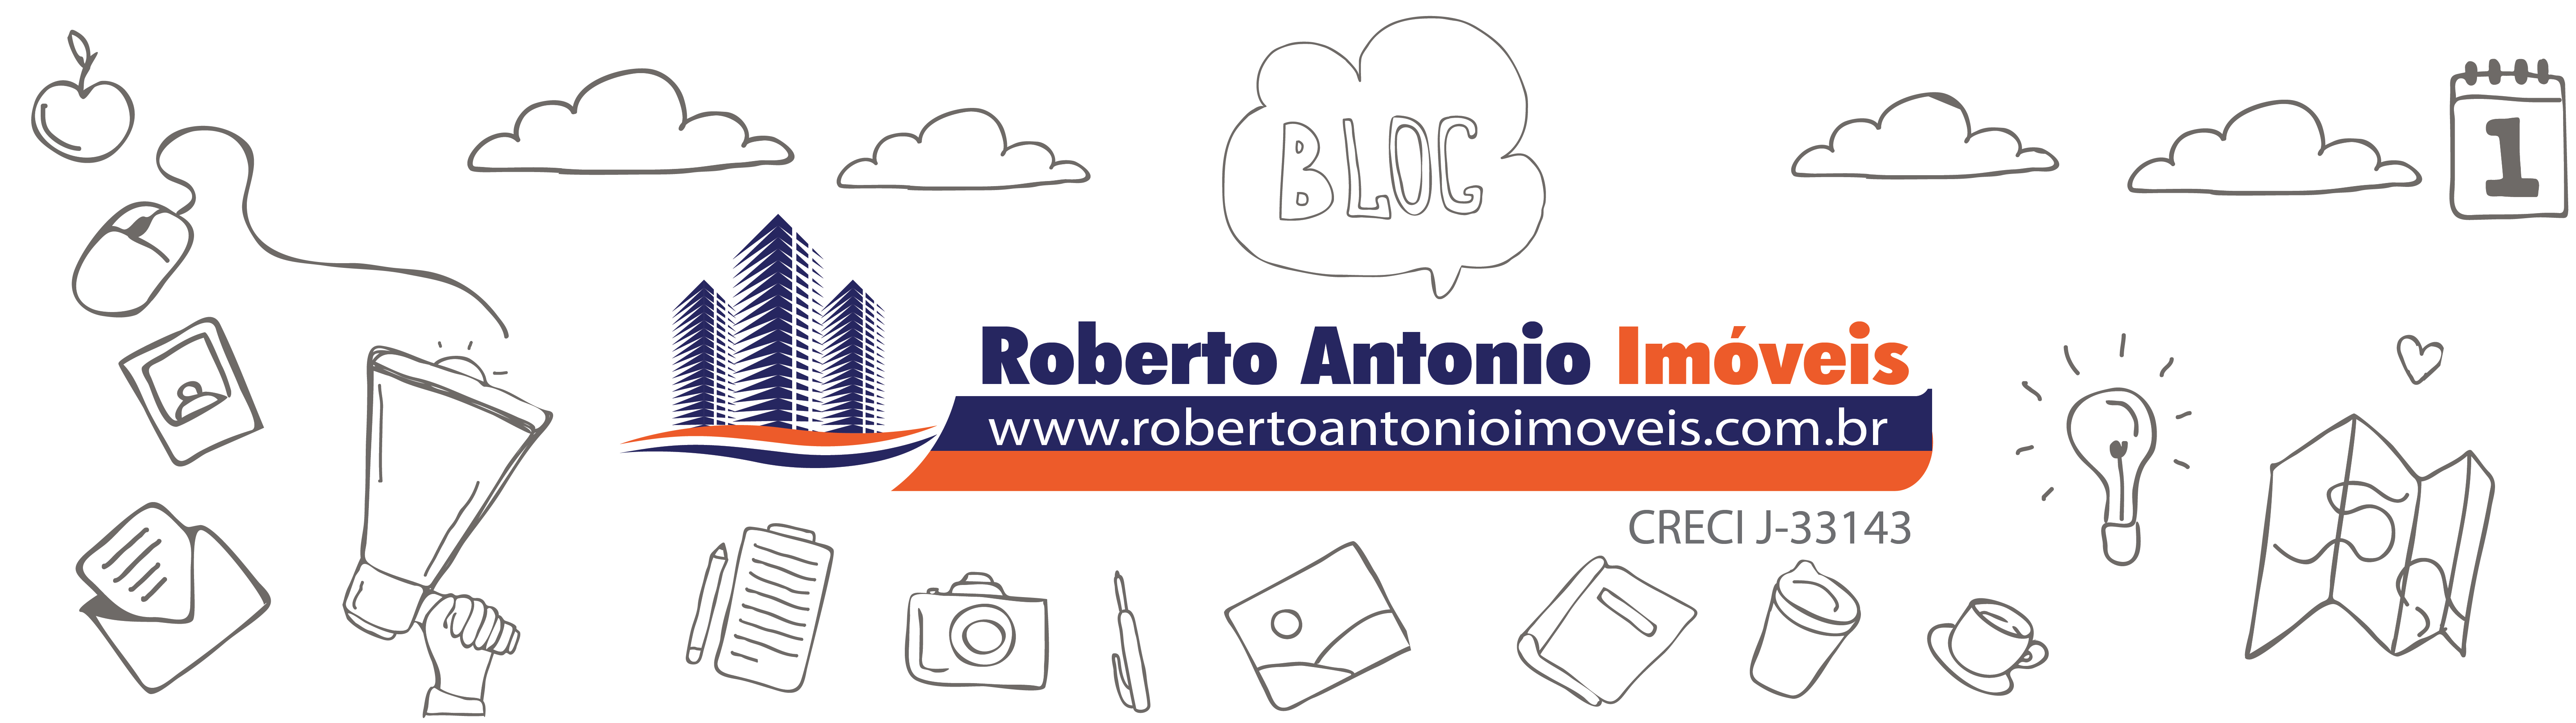 Blog Roberto Antonio Imóveis